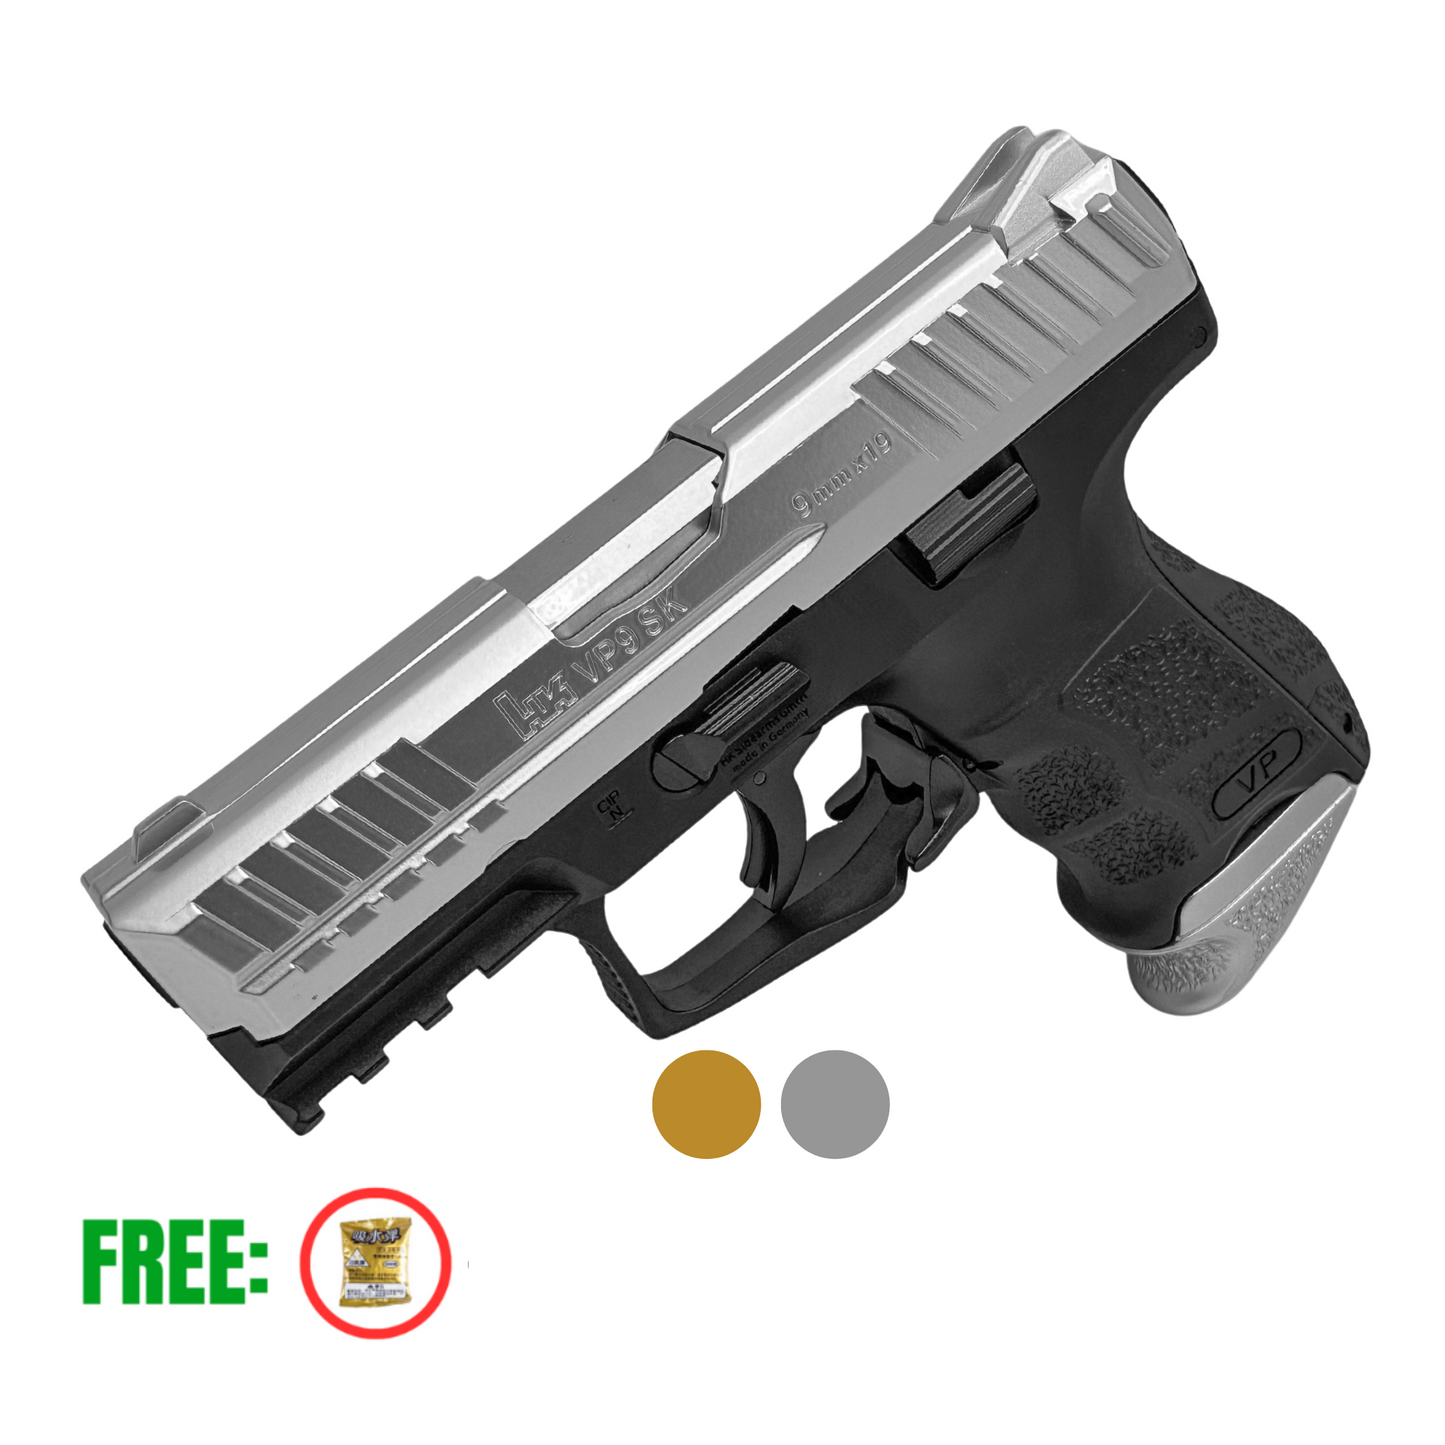 007 - HK VP9 SK Metal Manual Pistol - Gel Blaster